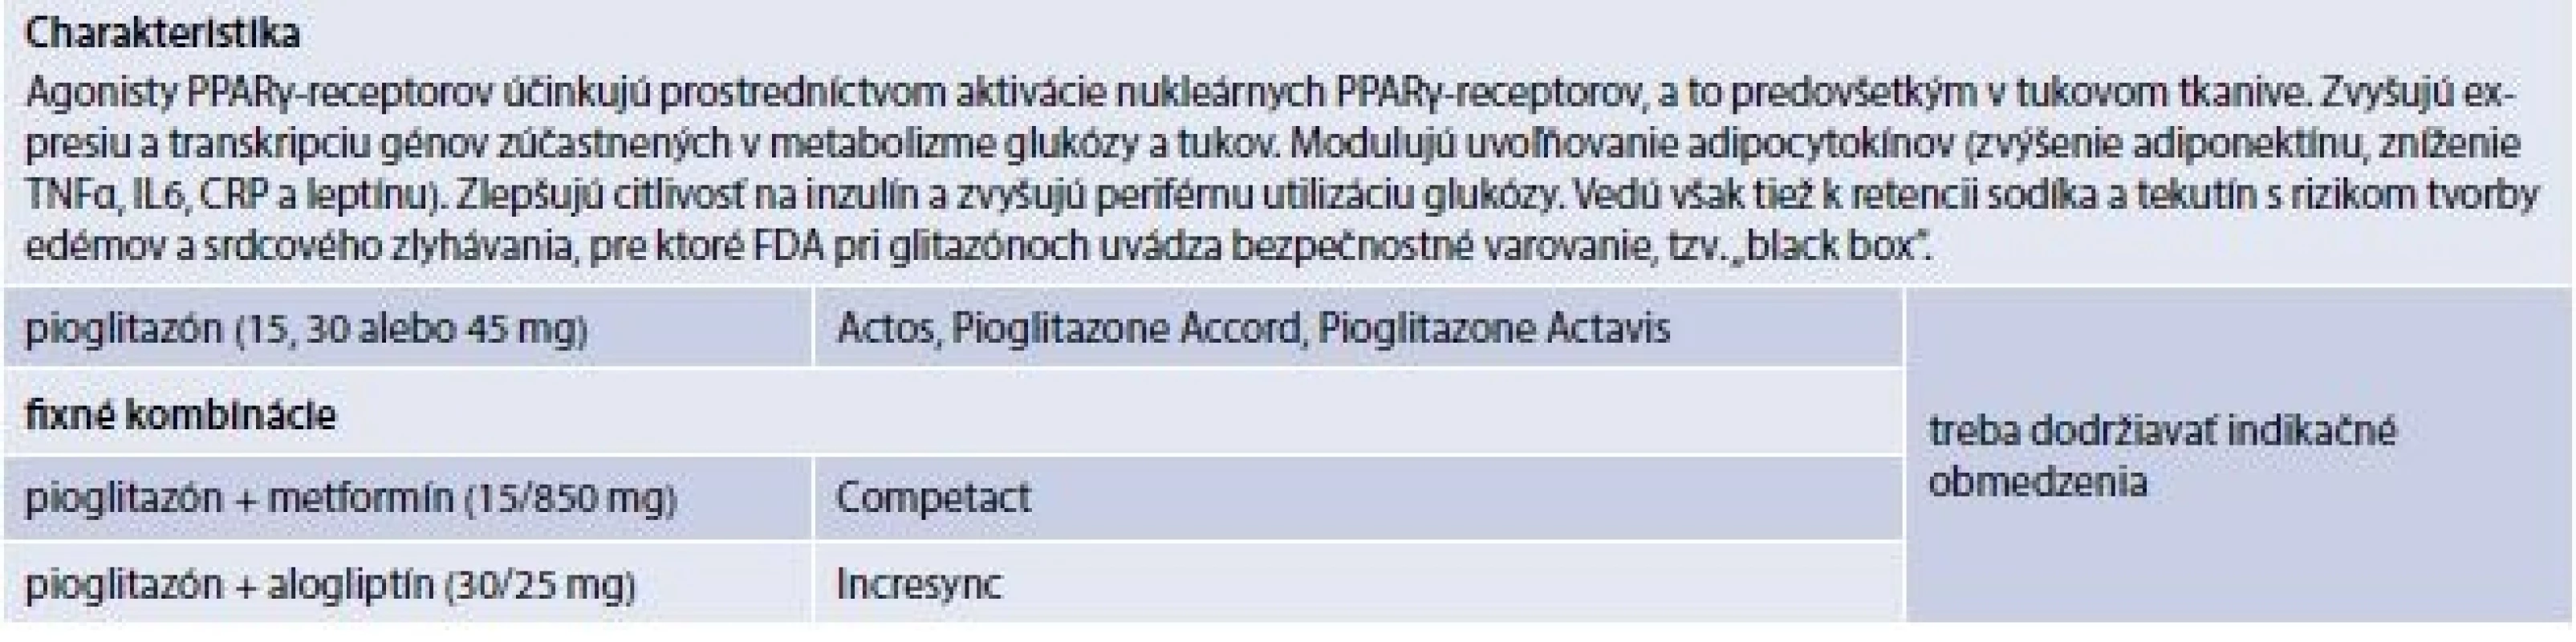 Tab. 6.6 |Agonisty PPARγ-recepetorov (prípravky kategorizované na Slovensku)